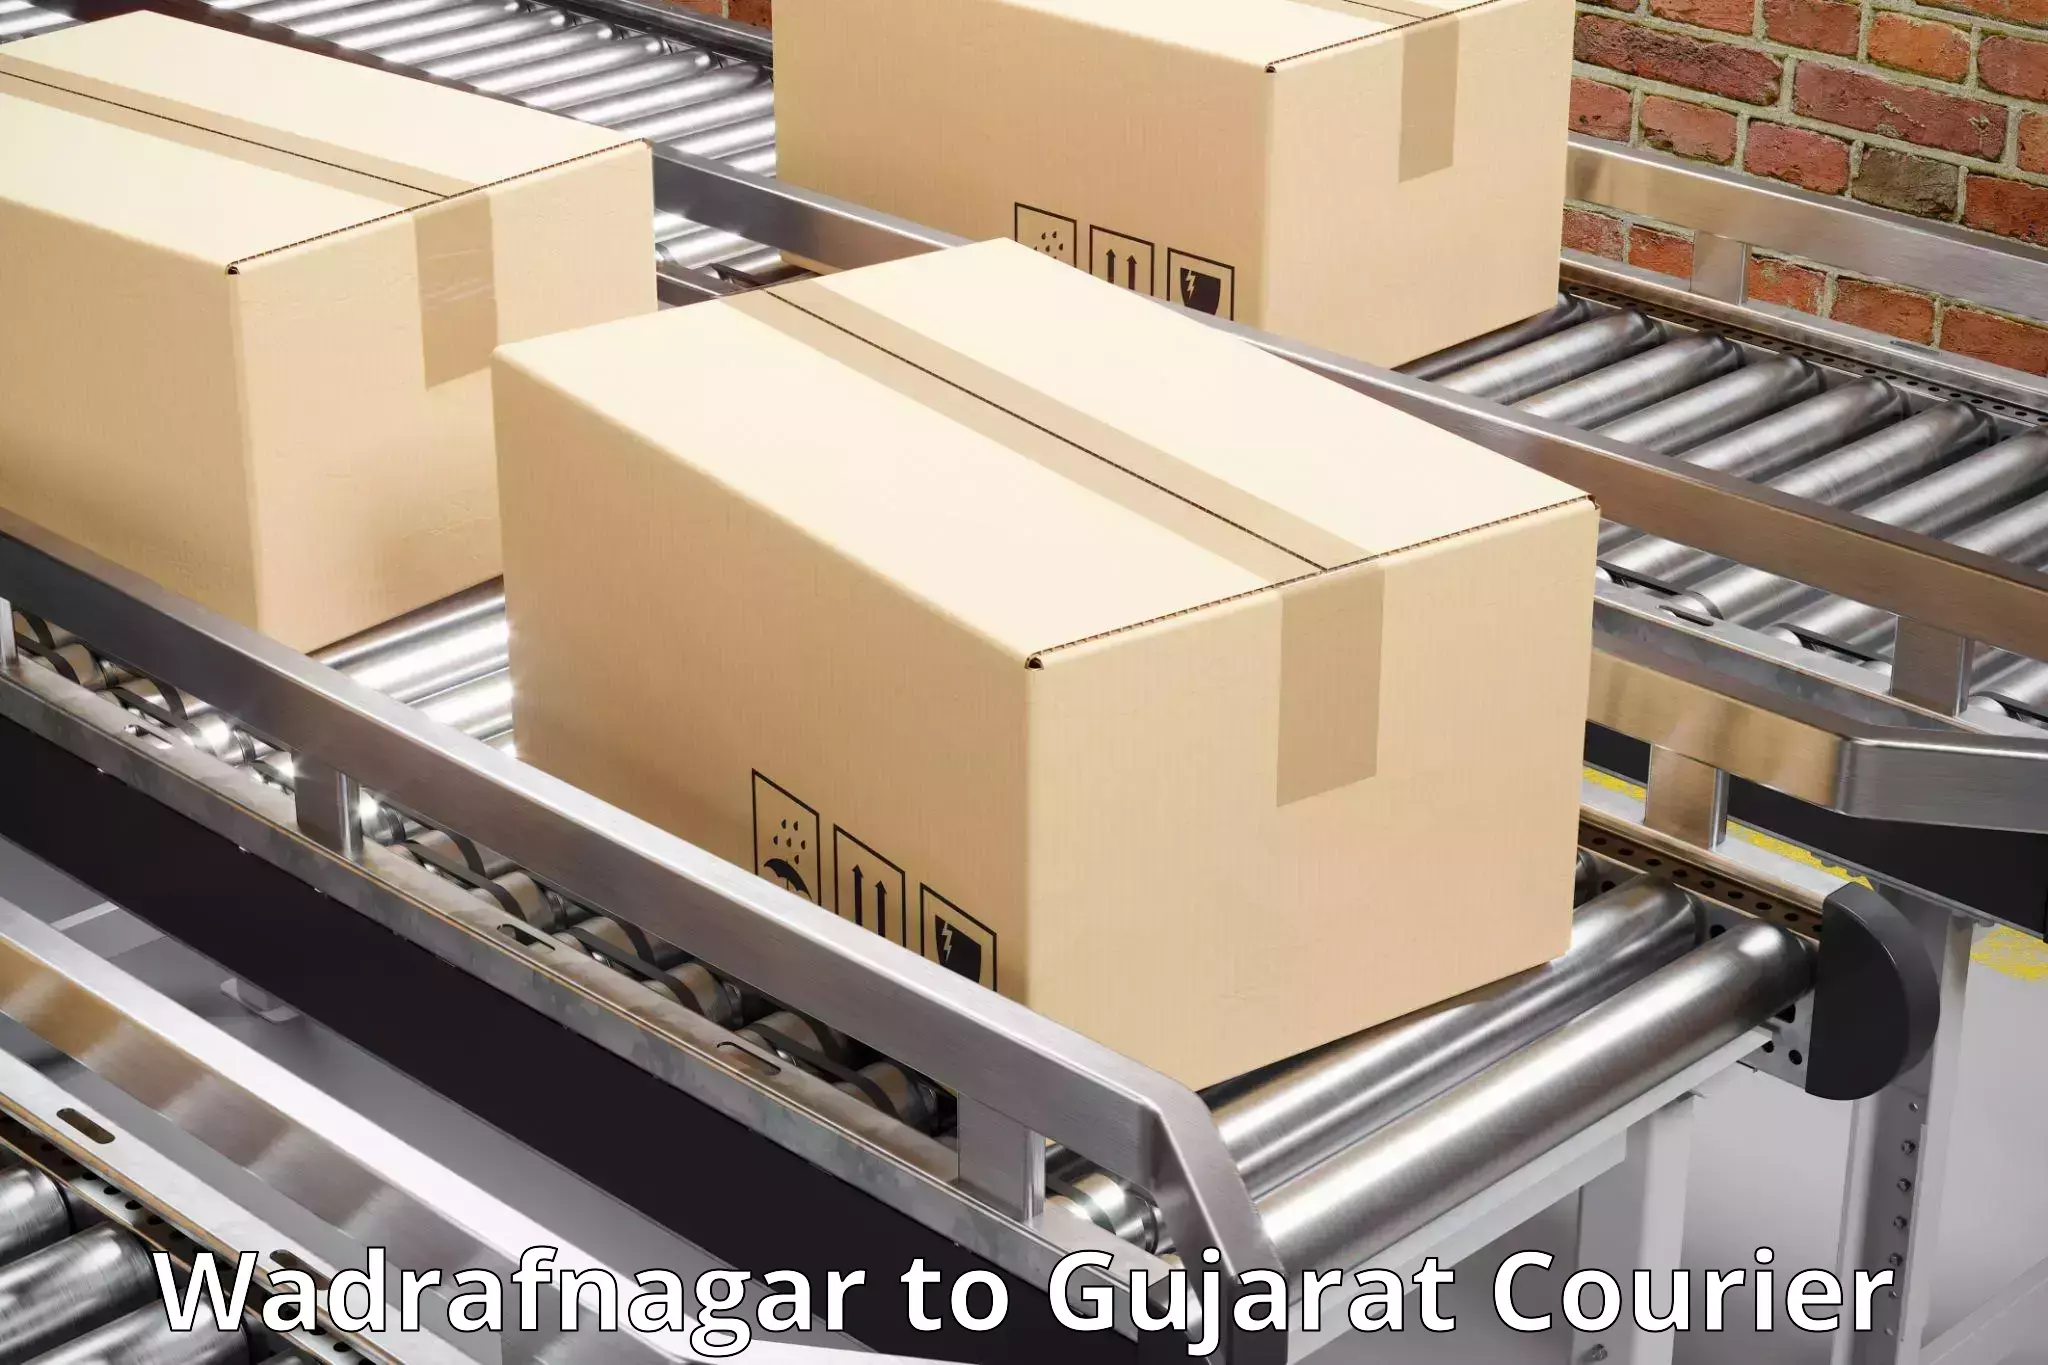 Global courier networks Wadrafnagar to Gujarat